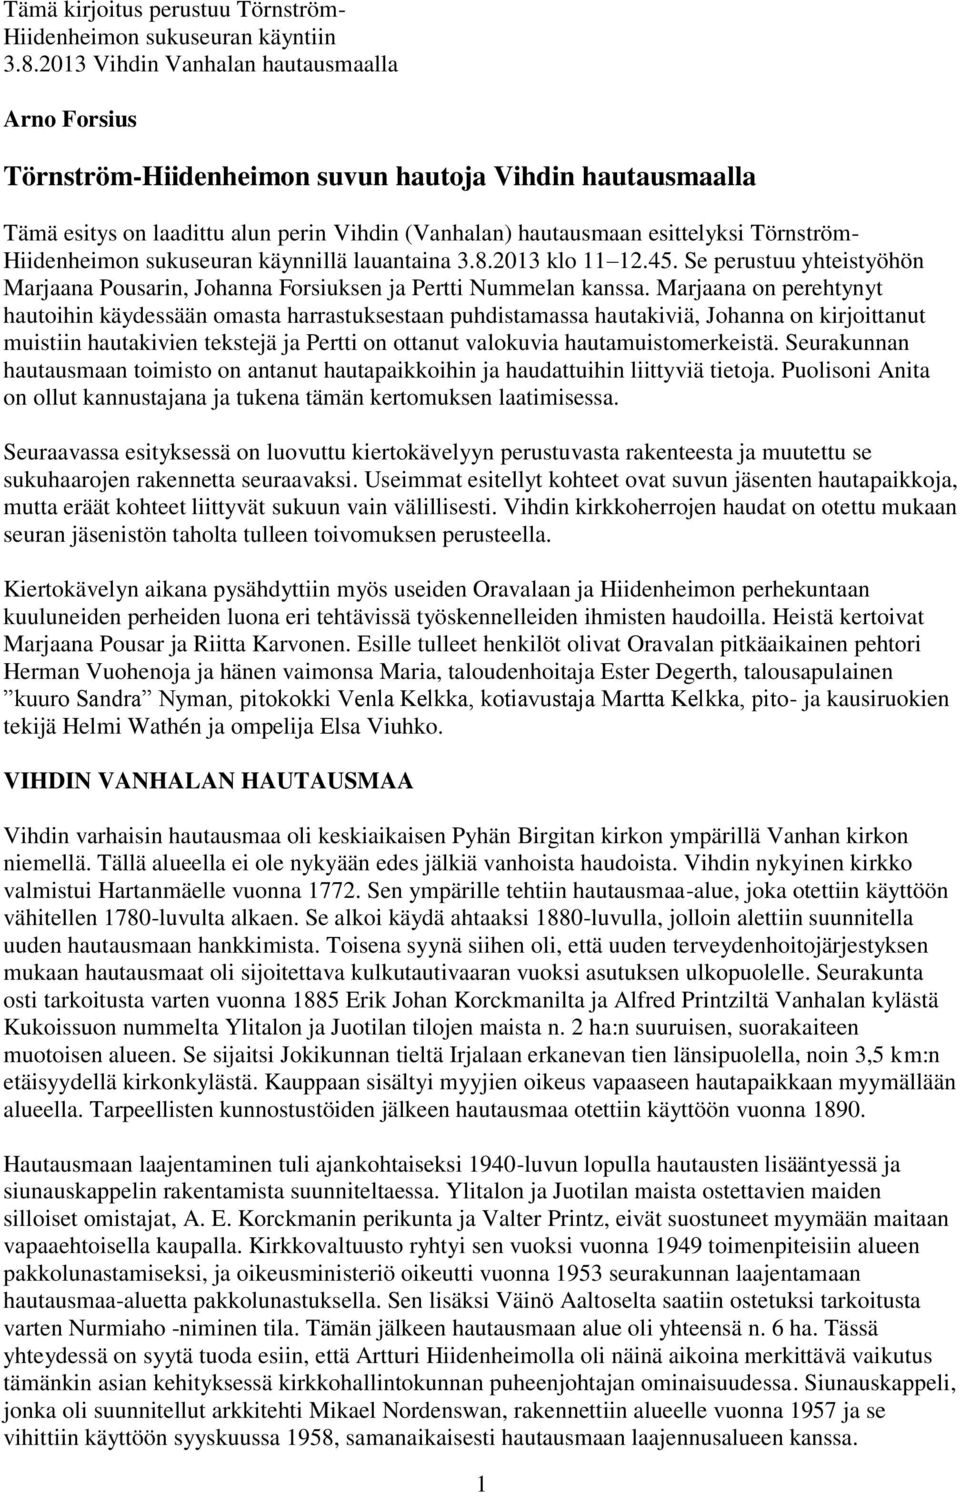 Hiidenheimon sukuseuran käynnillä lauantaina 3.8.2013 klo 11 12.45. Se perustuu yhteistyöhön Marjaana Pousarin, Johanna Forsiuksen ja Pertti Nummelan kanssa.